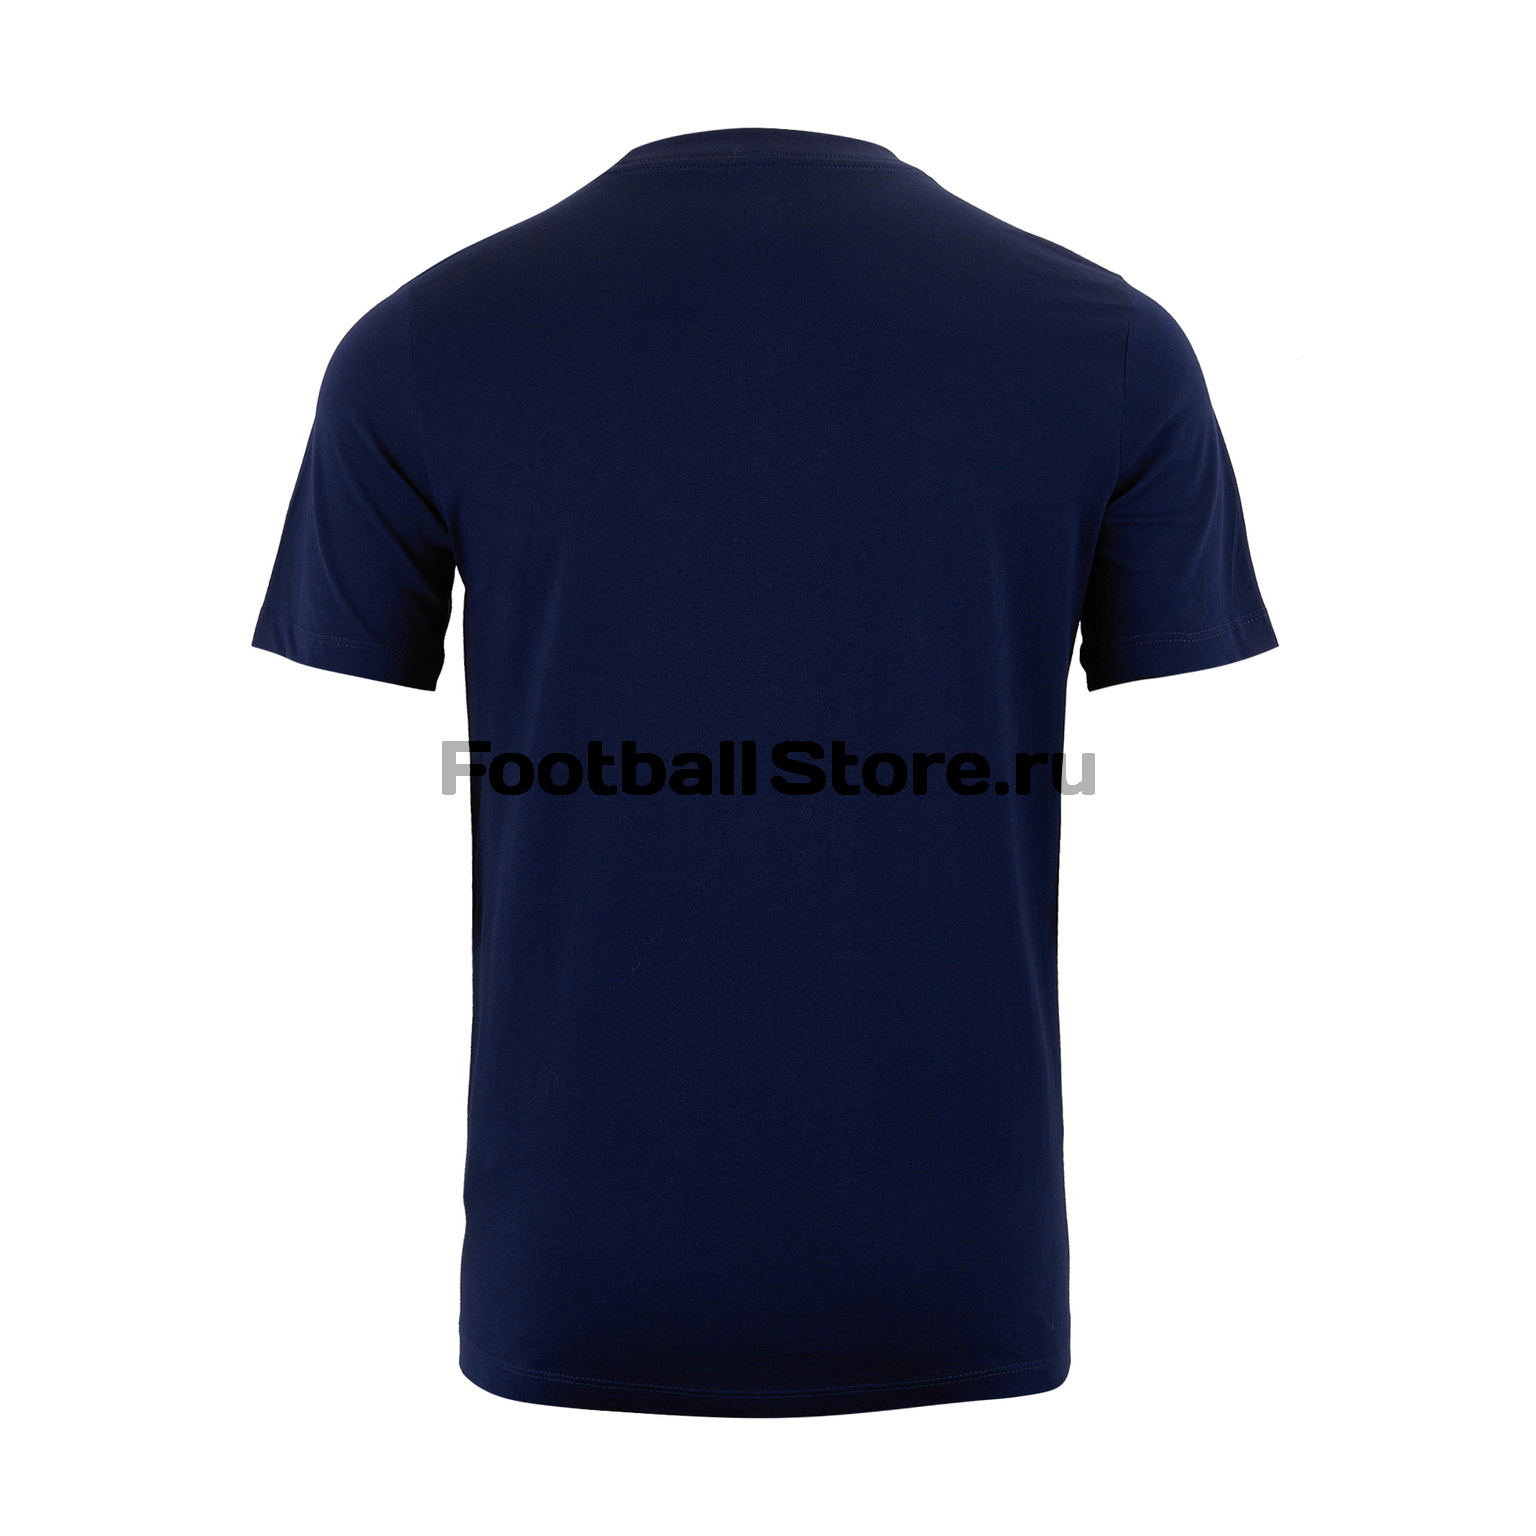 Футболка подростковая хлопковая Nike Tottenham AQ7867-429